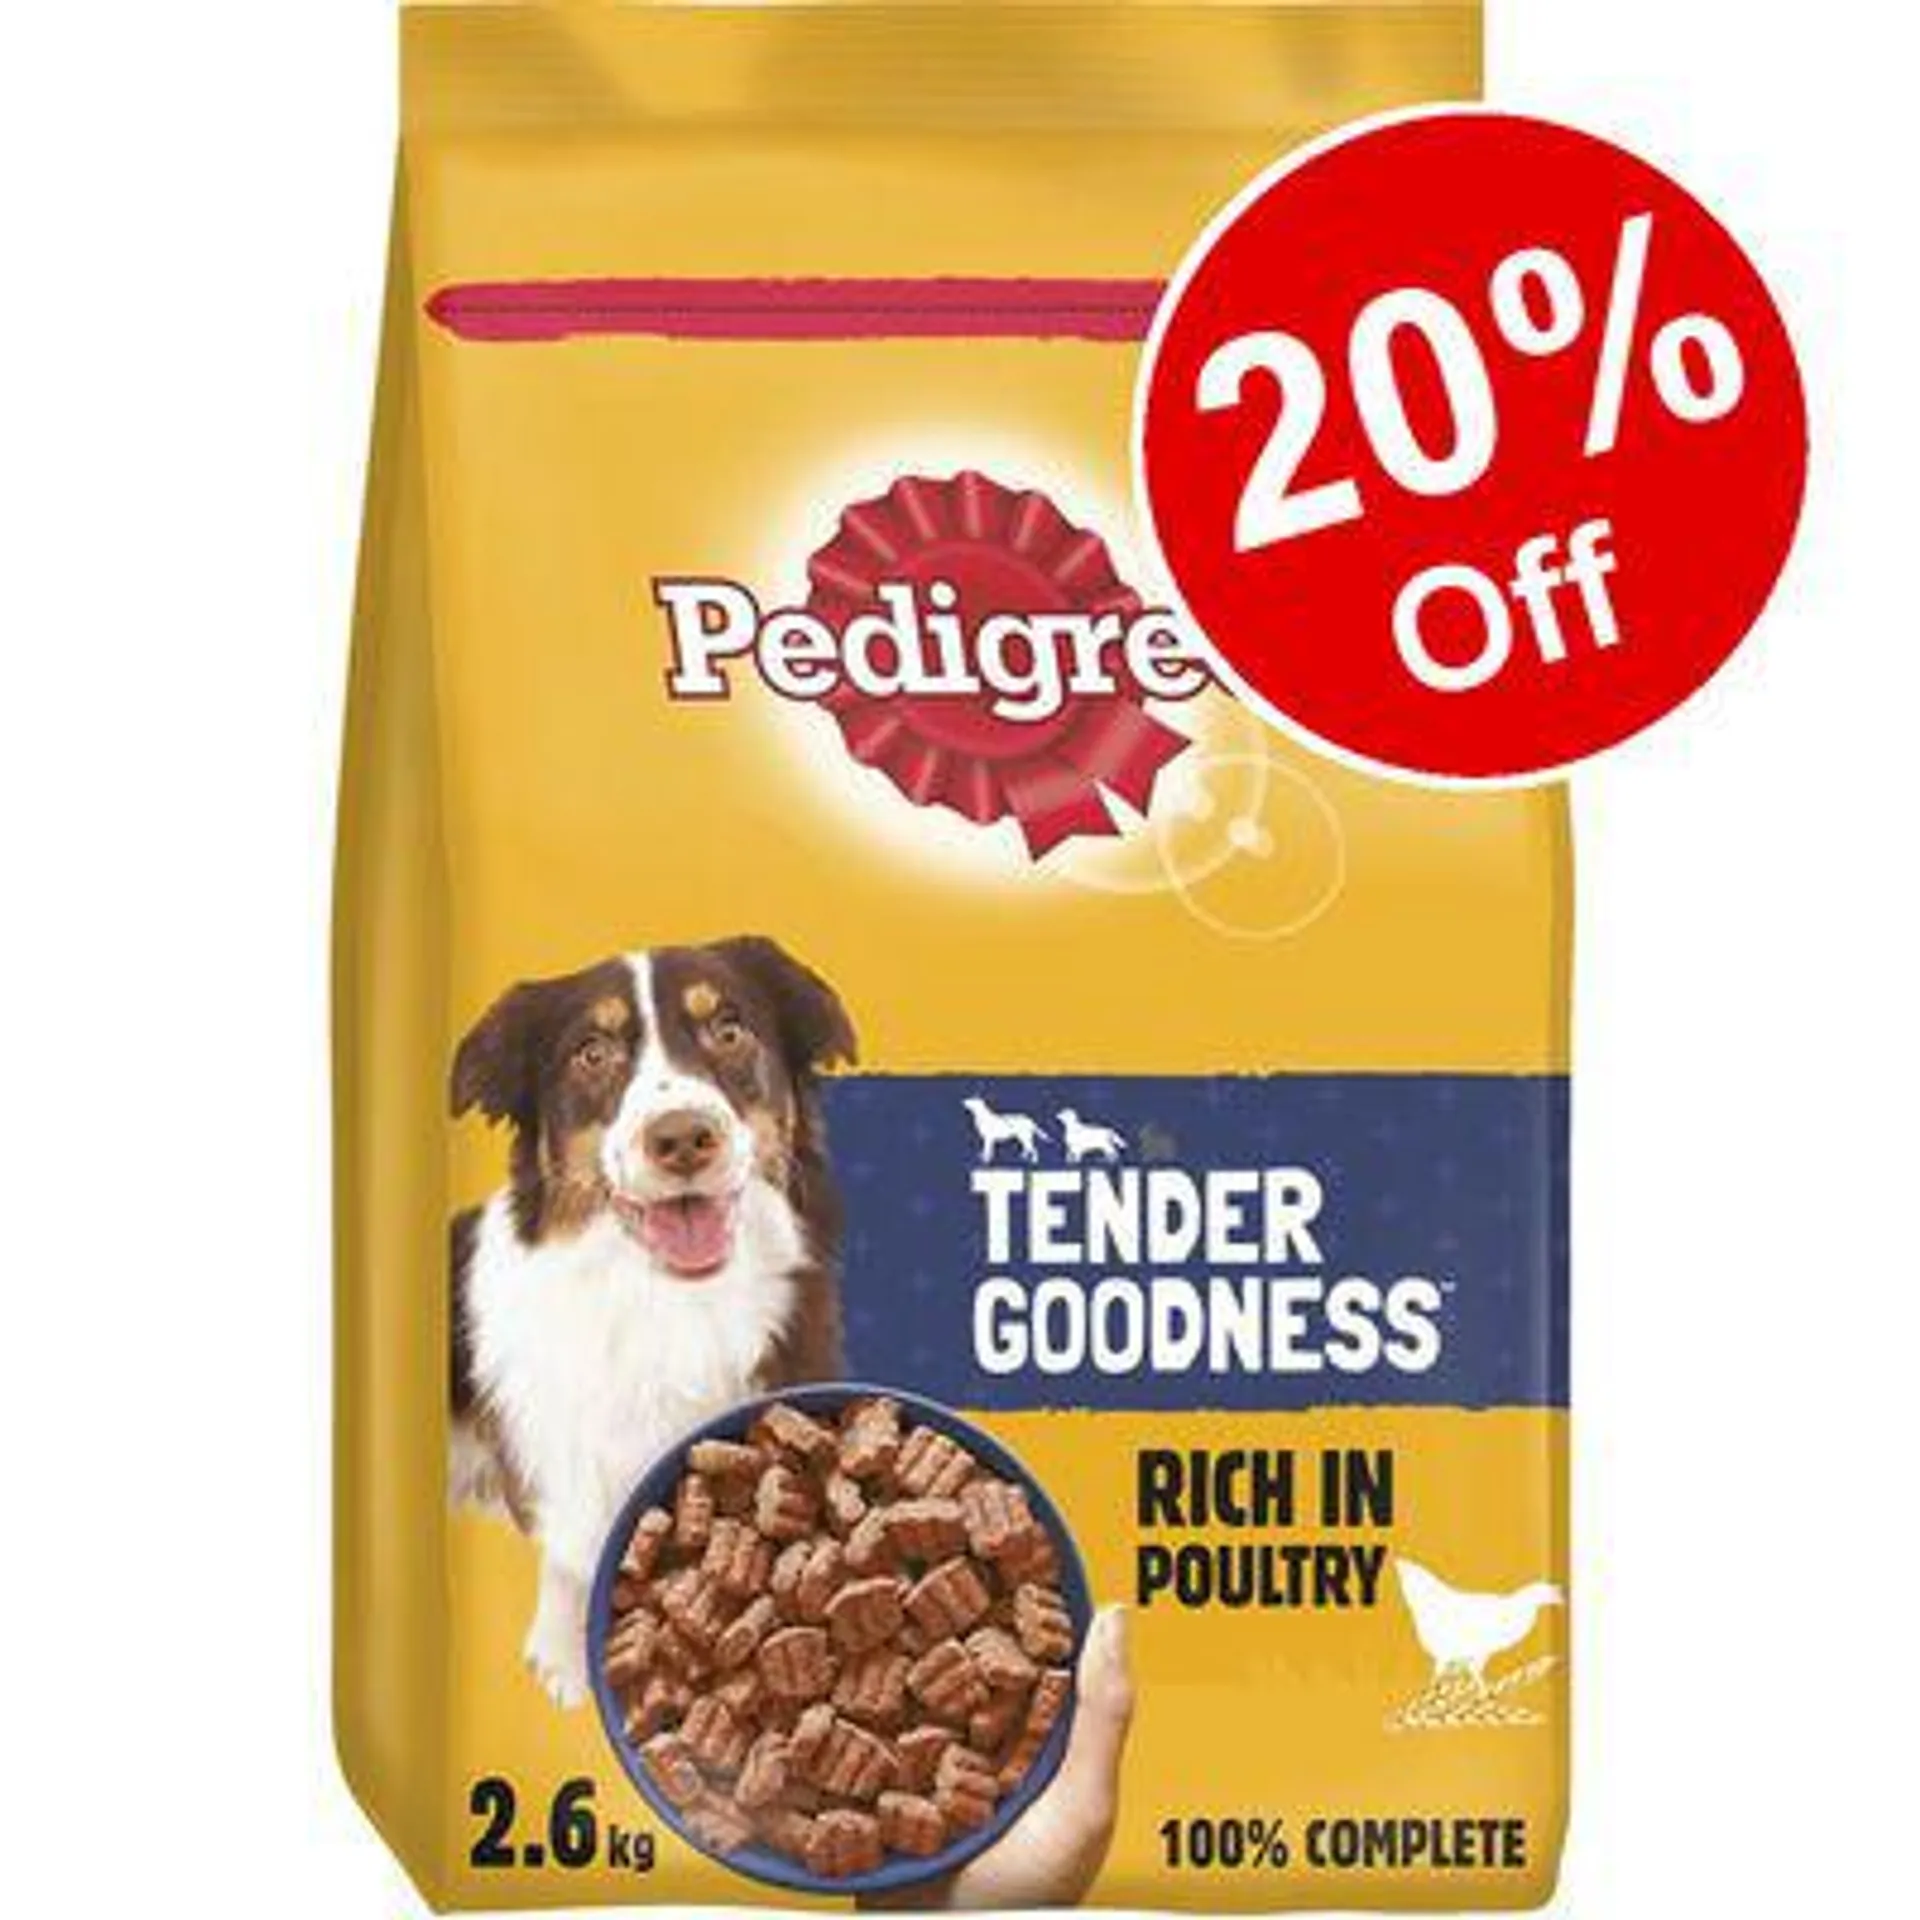 2.6kg Pedigree Adult Tender Goodness Dry Dog Food - 20% Off! *